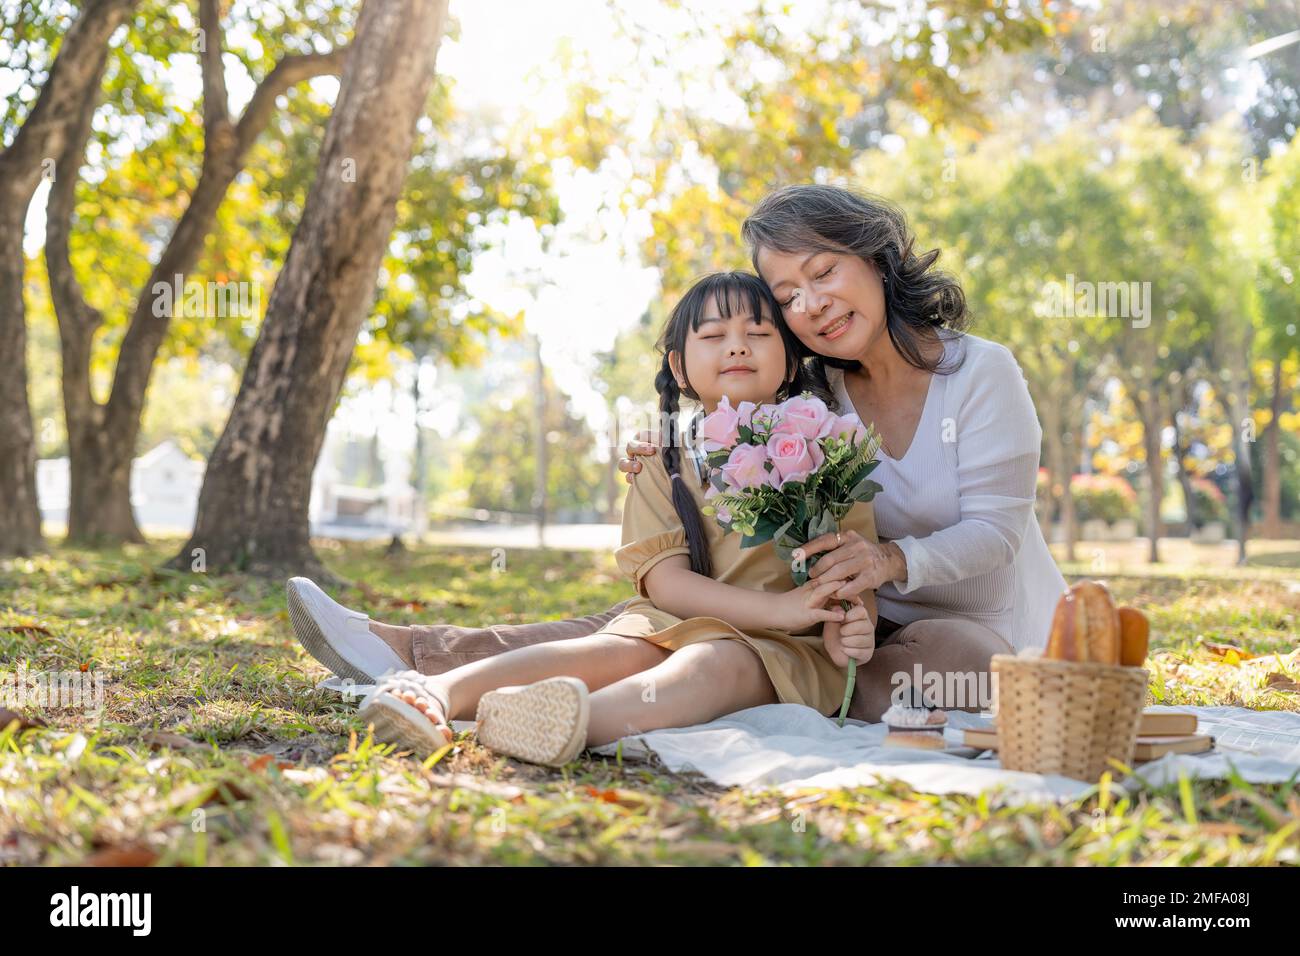 Une heureuse grand-mère asiatique qui s'embrasse avec sa belle petite-fille dans le parc. concept de loisirs et de famille Banque D'Images